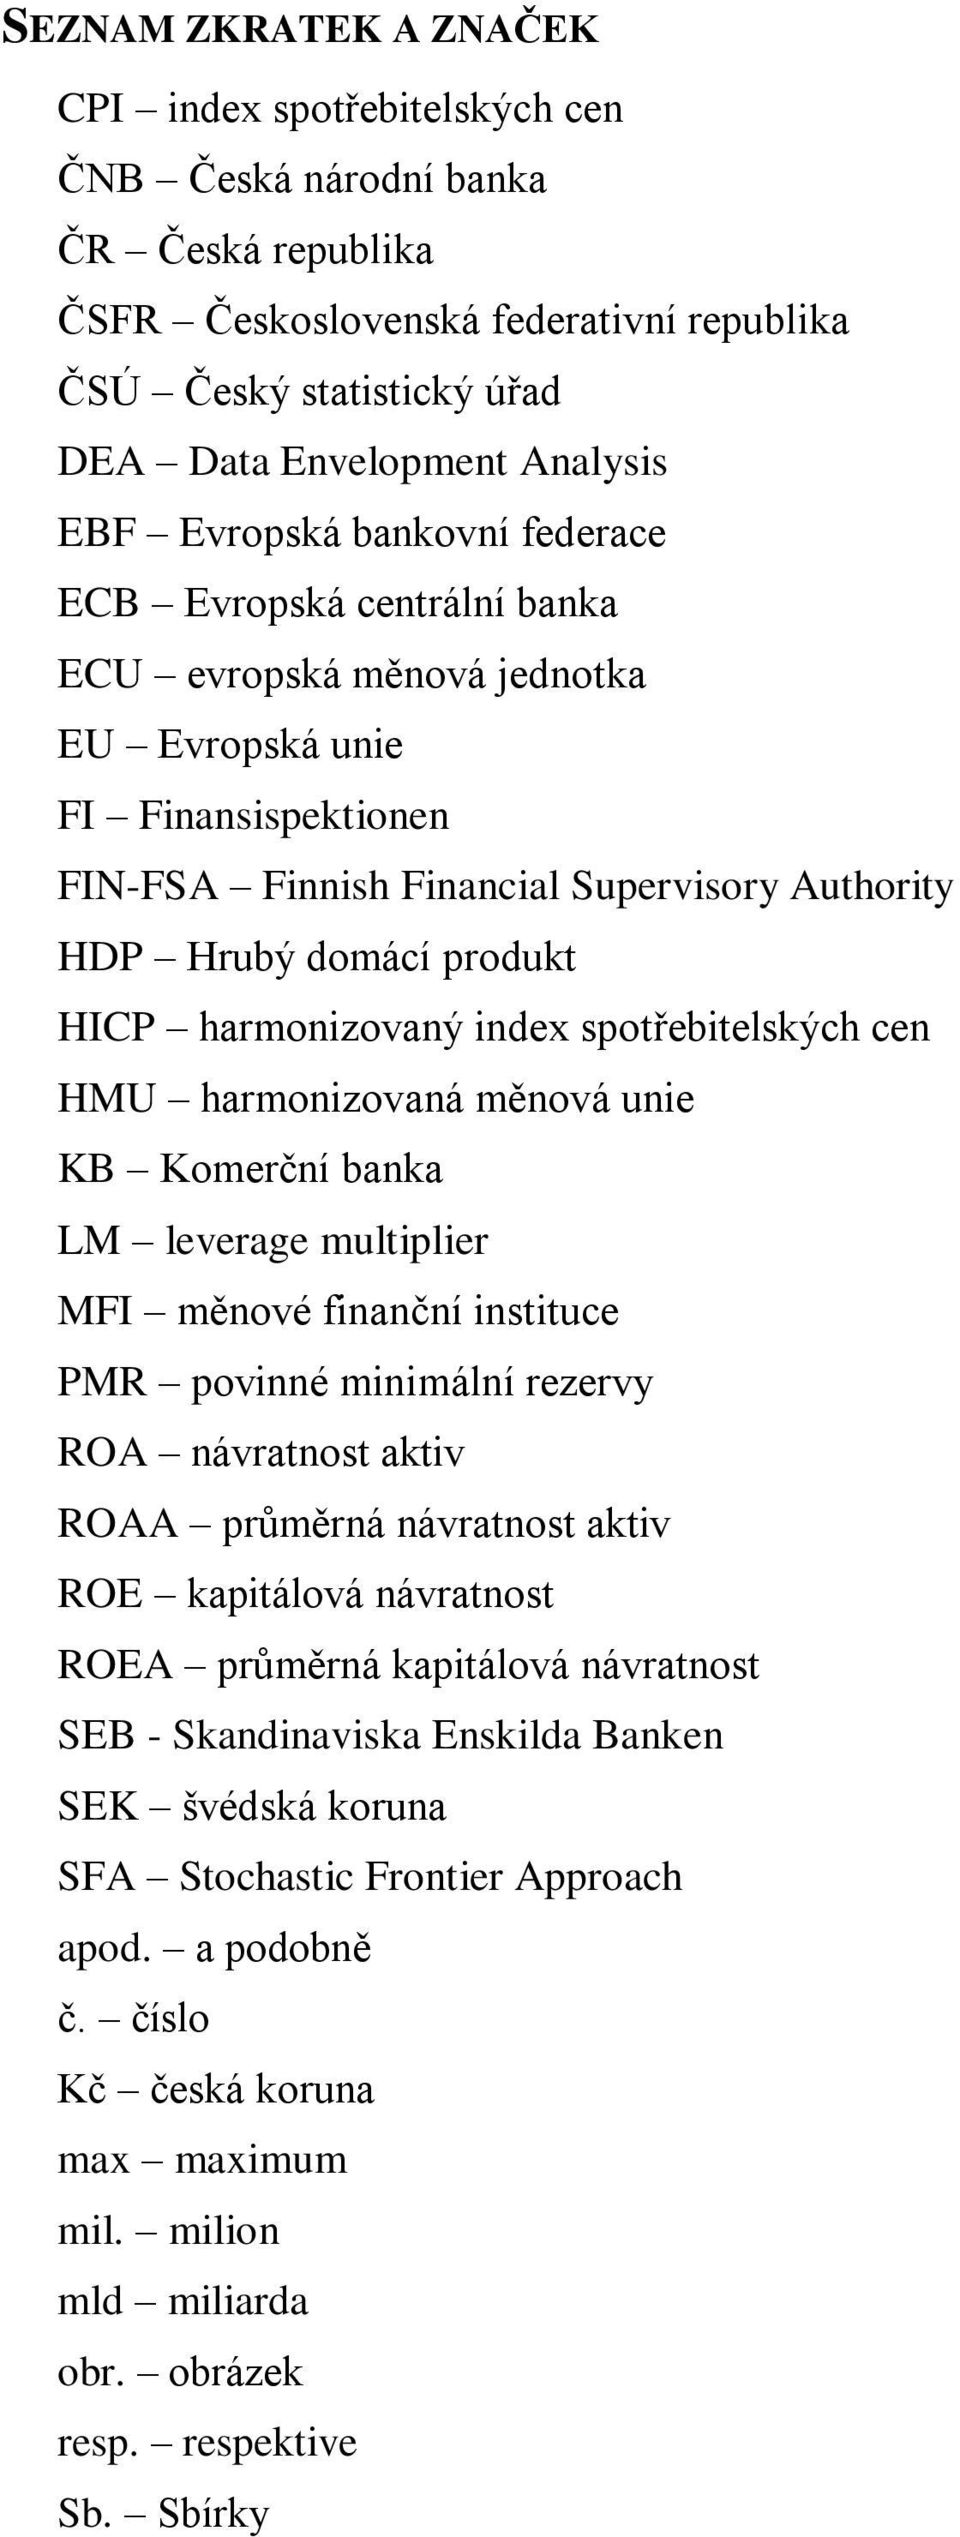 HICP harmonizovaný index spotřebitelských cen HMU harmonizovaná měnová unie KB Komerční banka LM leverage multiplier MFI měnové finanční instituce PMR povinné minimální rezervy ROA návratnost aktiv